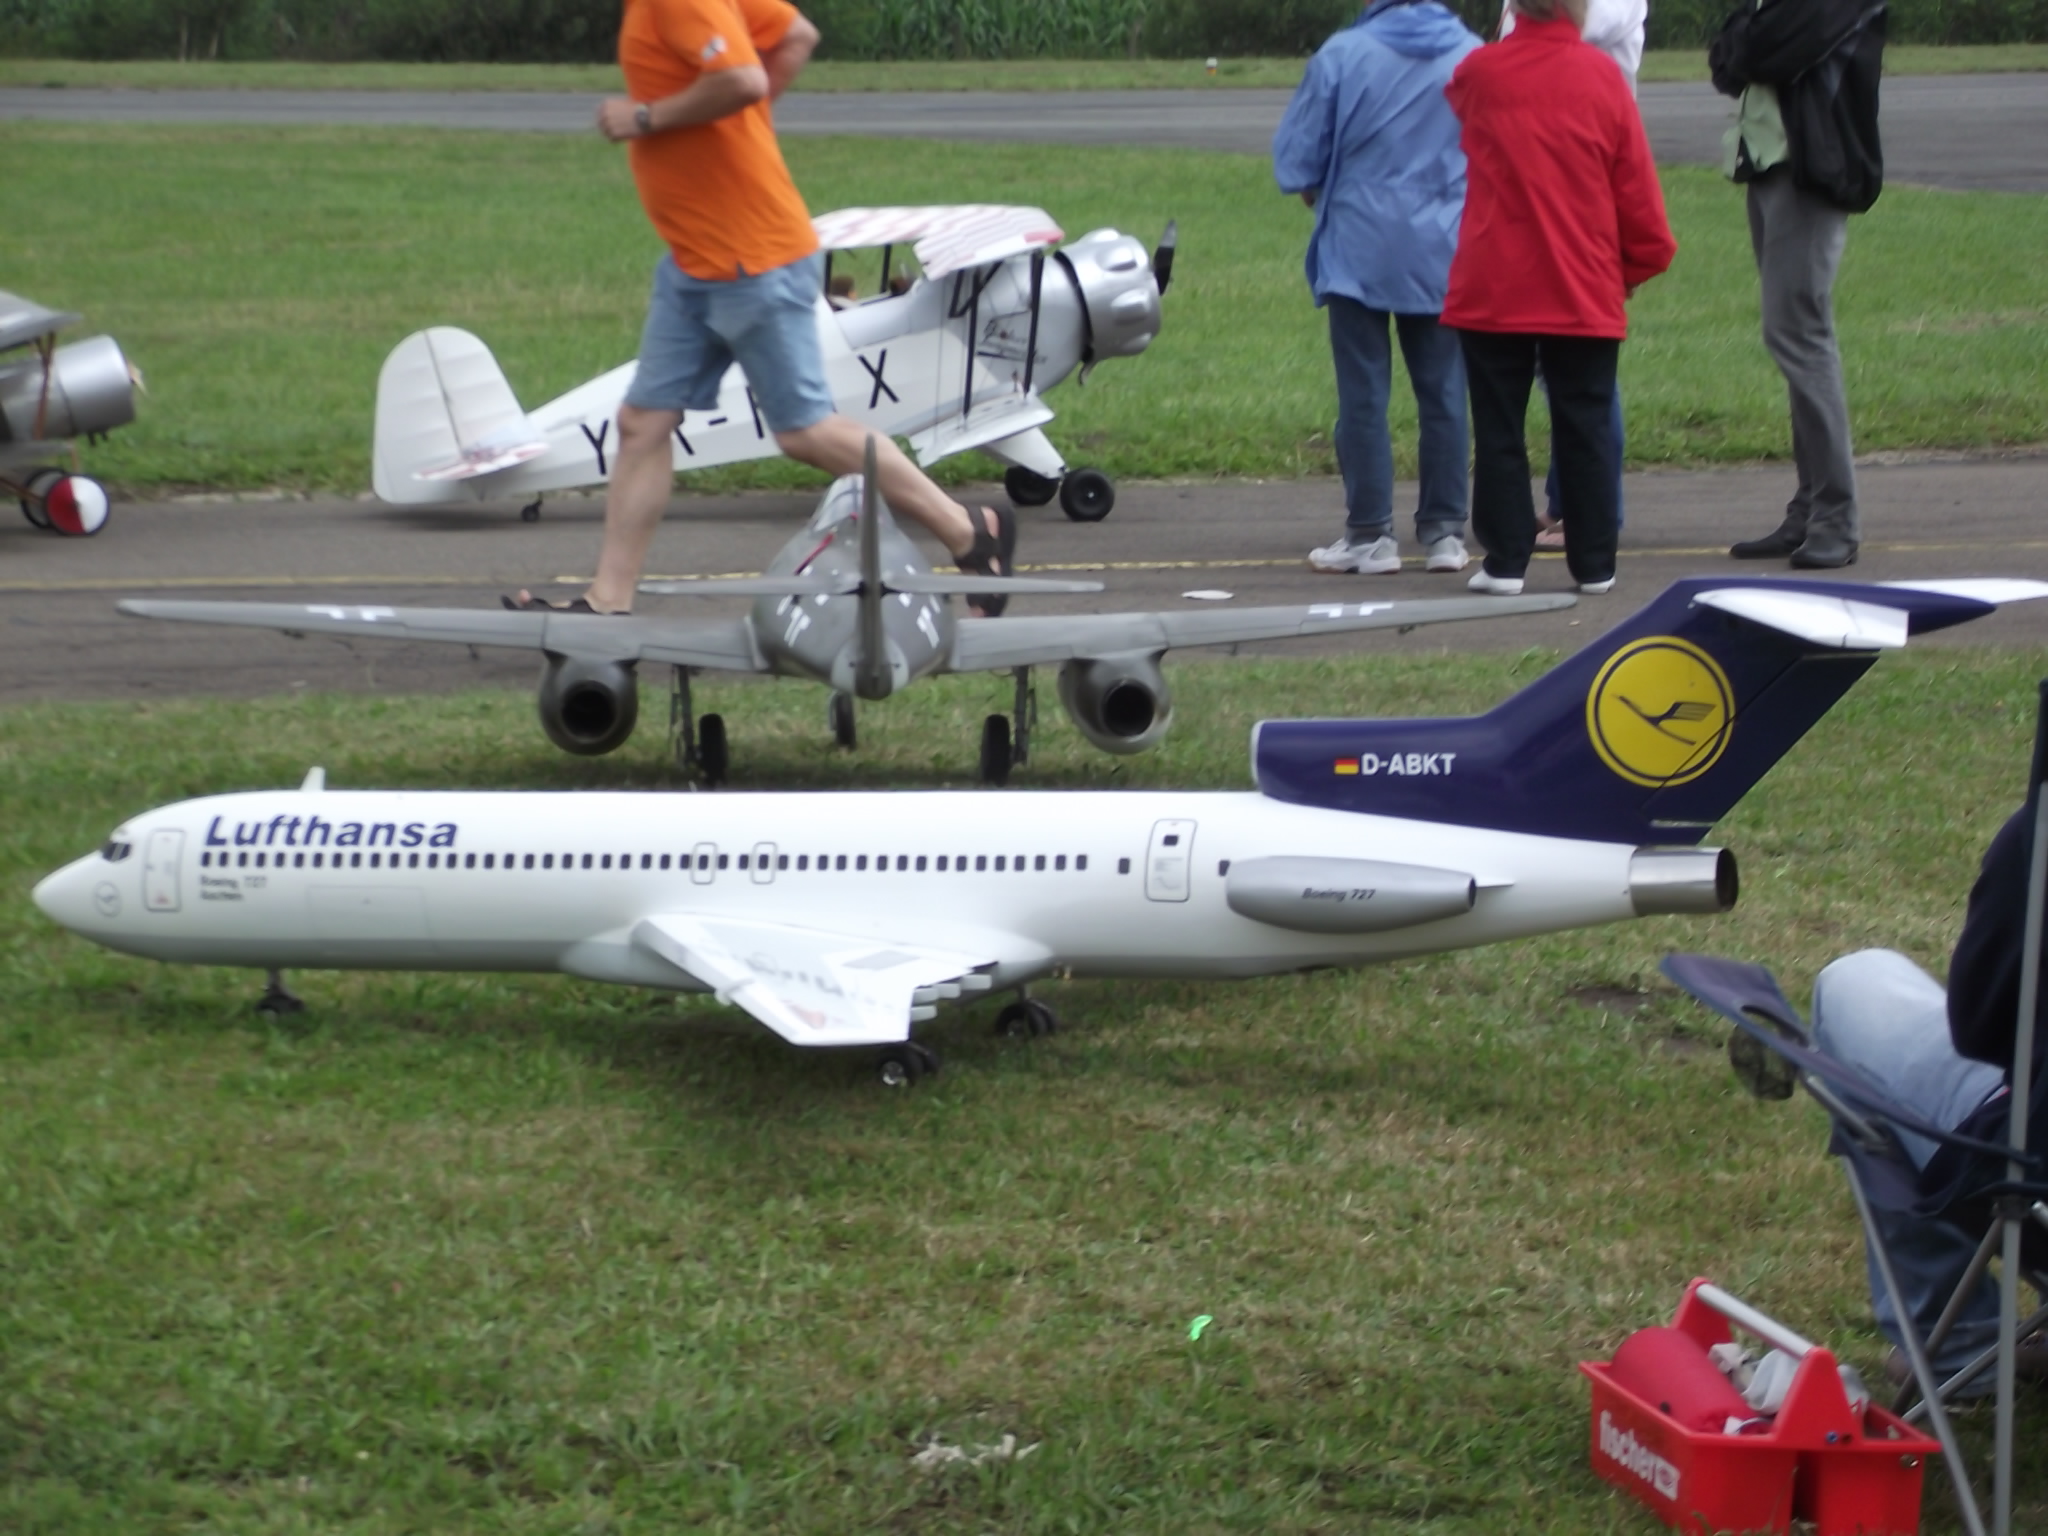 Jet-Flugtage in Ganderkesee - Lufthansa Jet am Boden